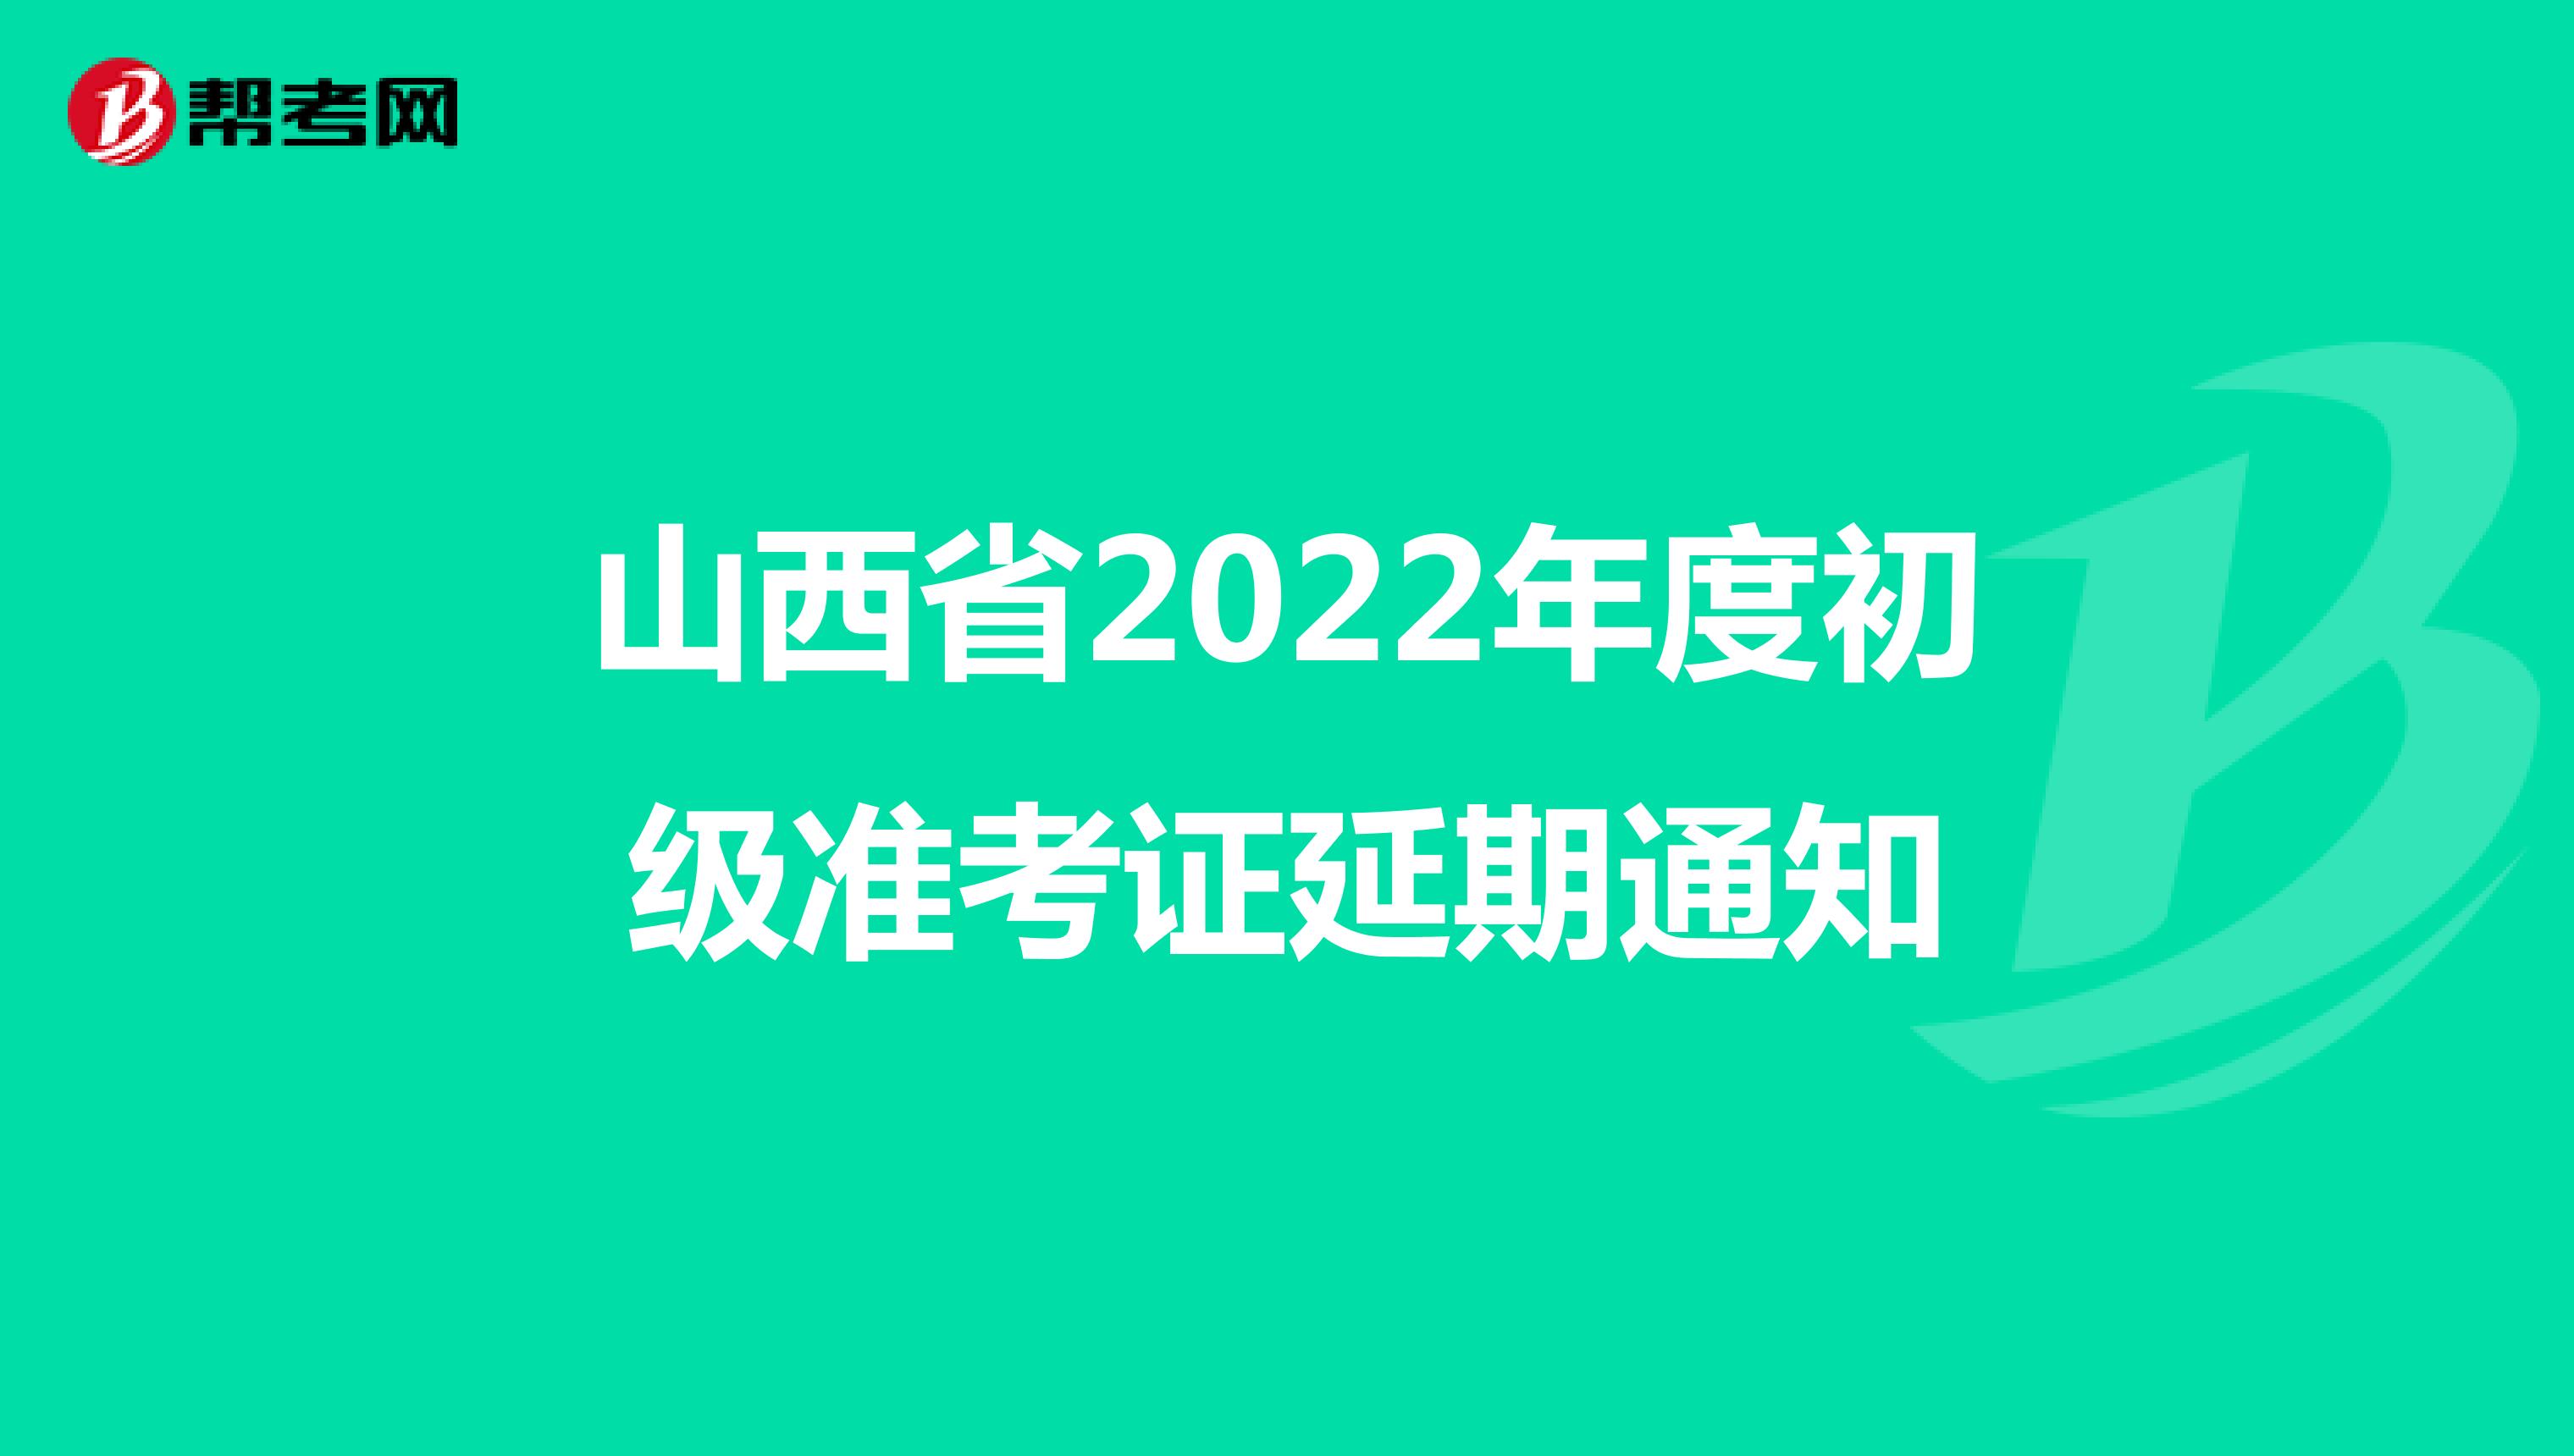 山西省2022年度初级准考证延期通知